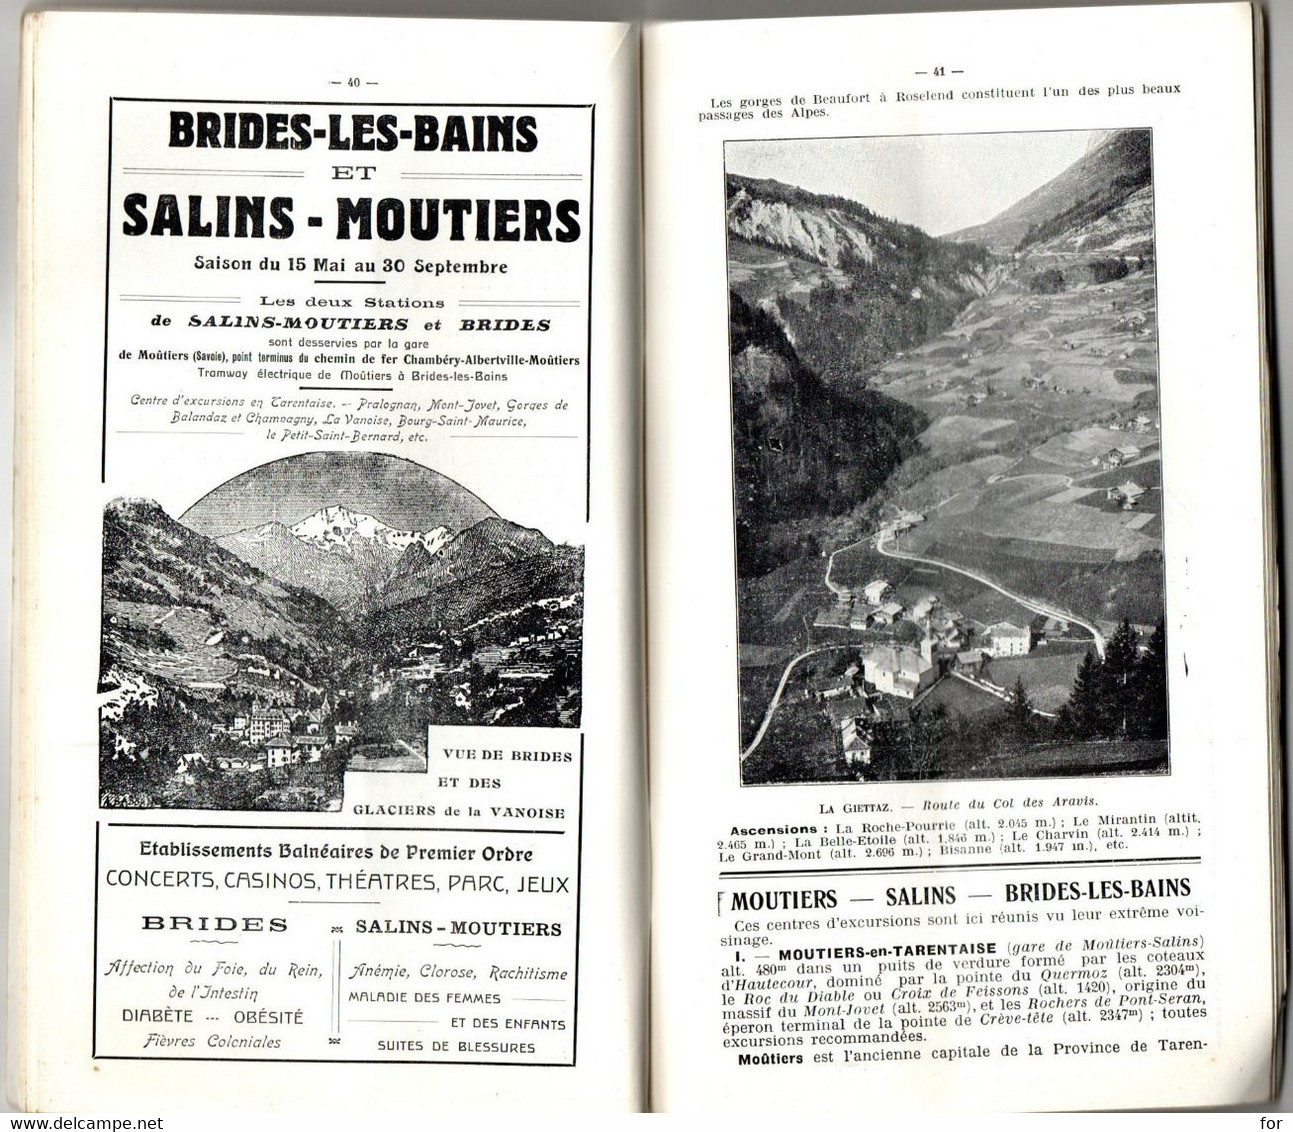 Livre Régionalisme : Savoie : La Savoie Pittoresque : Centres D'excursions - Stations D'Altitudes : Publicité : Tourisme - Alpes - Pays-de-Savoie